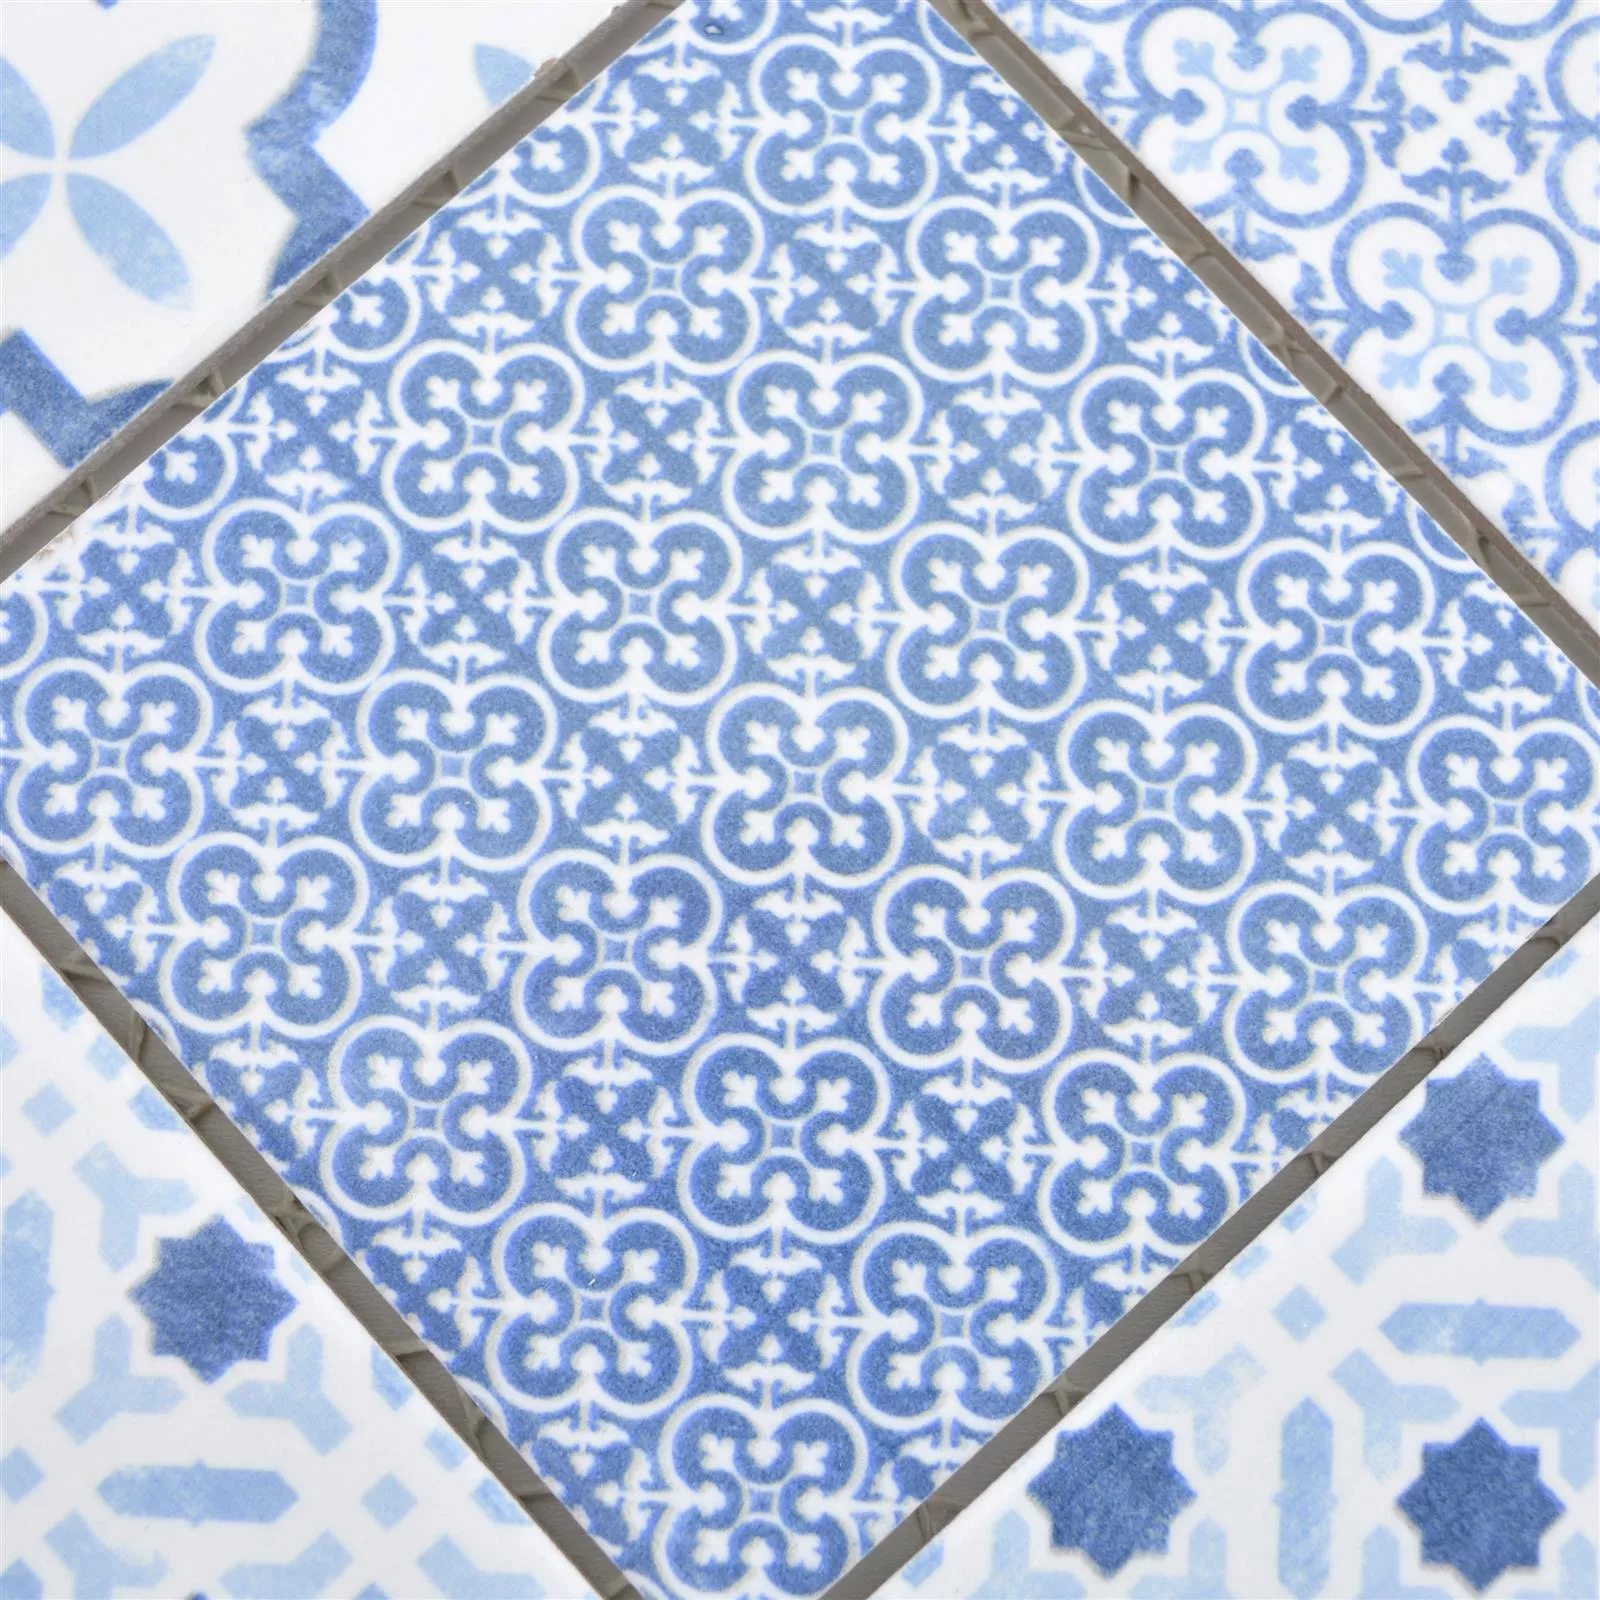 Sample Ceramic Mosaic Tiles Romantica Retro Blue